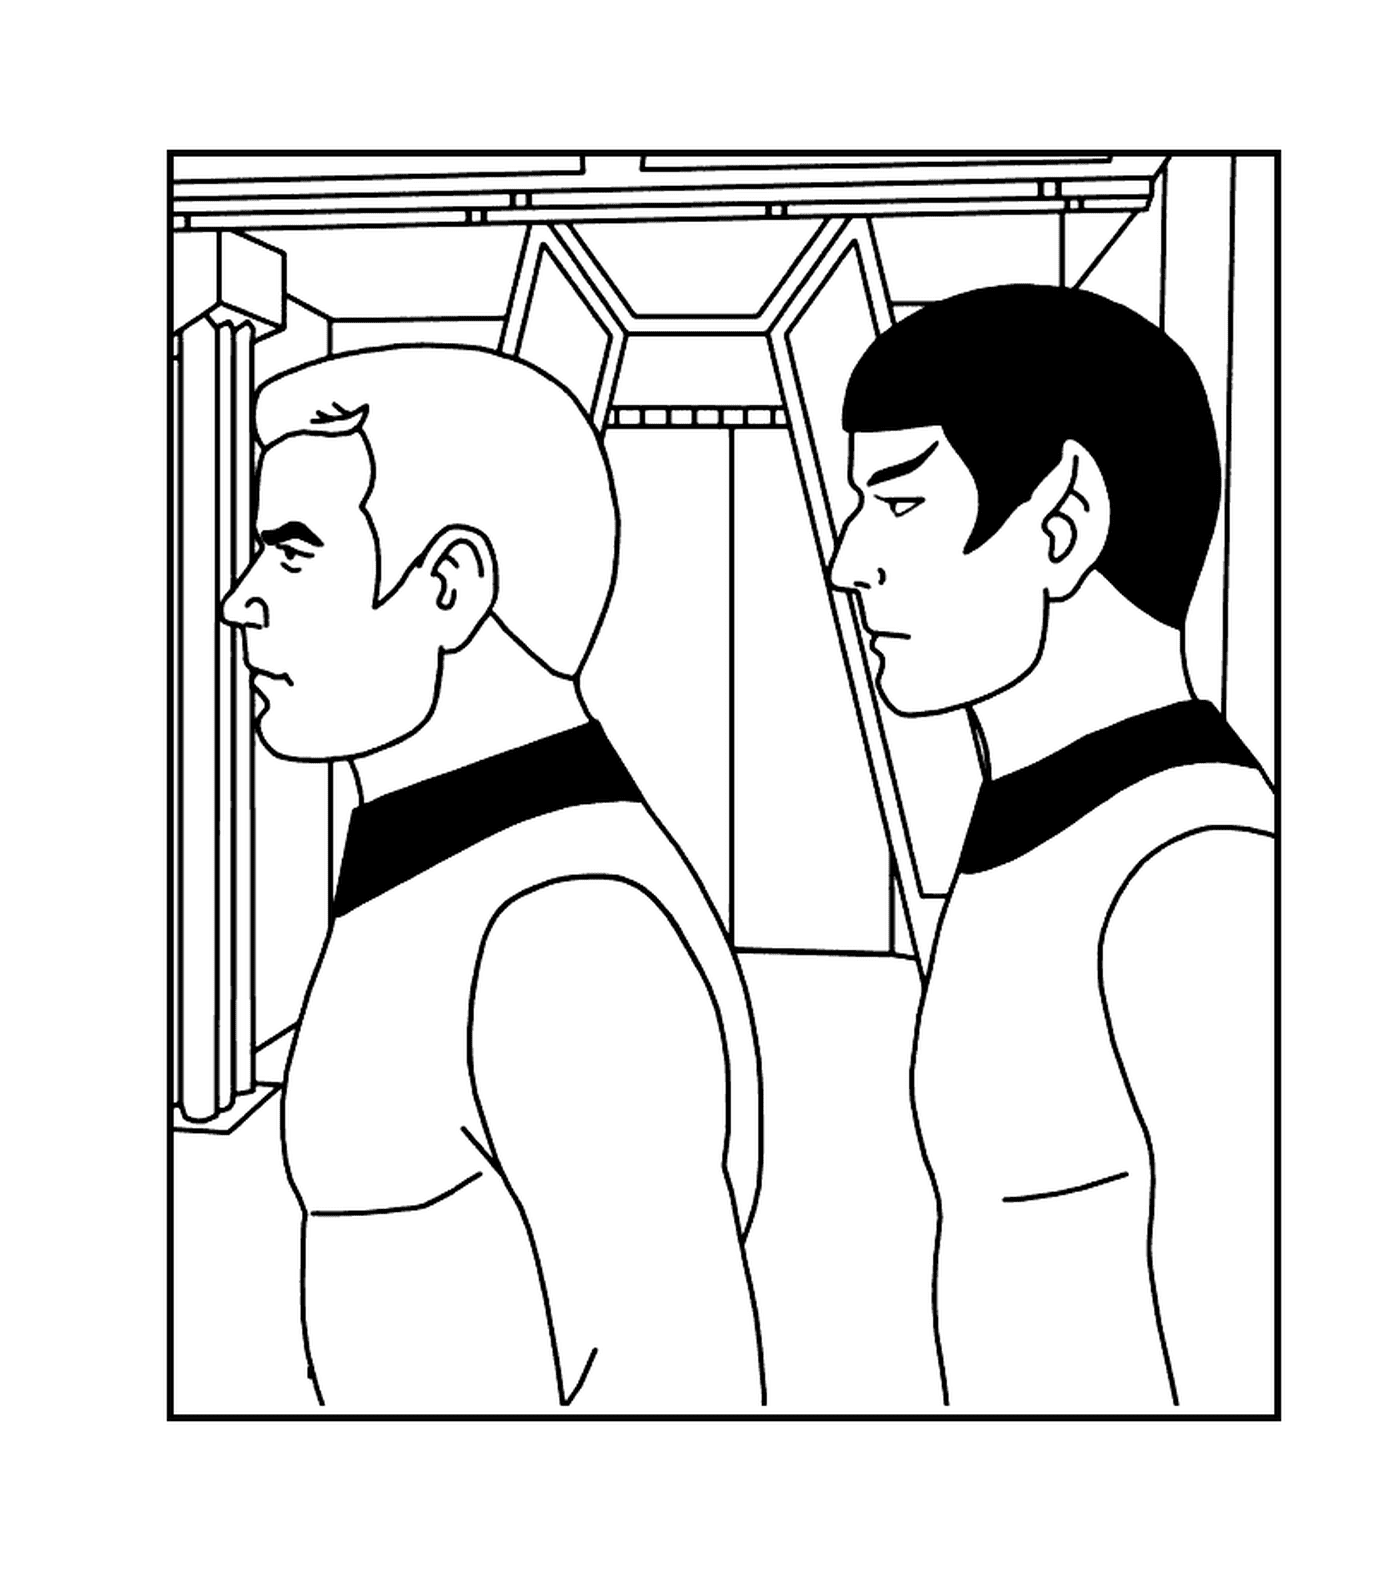  Spock e Kirk di Star Trek 